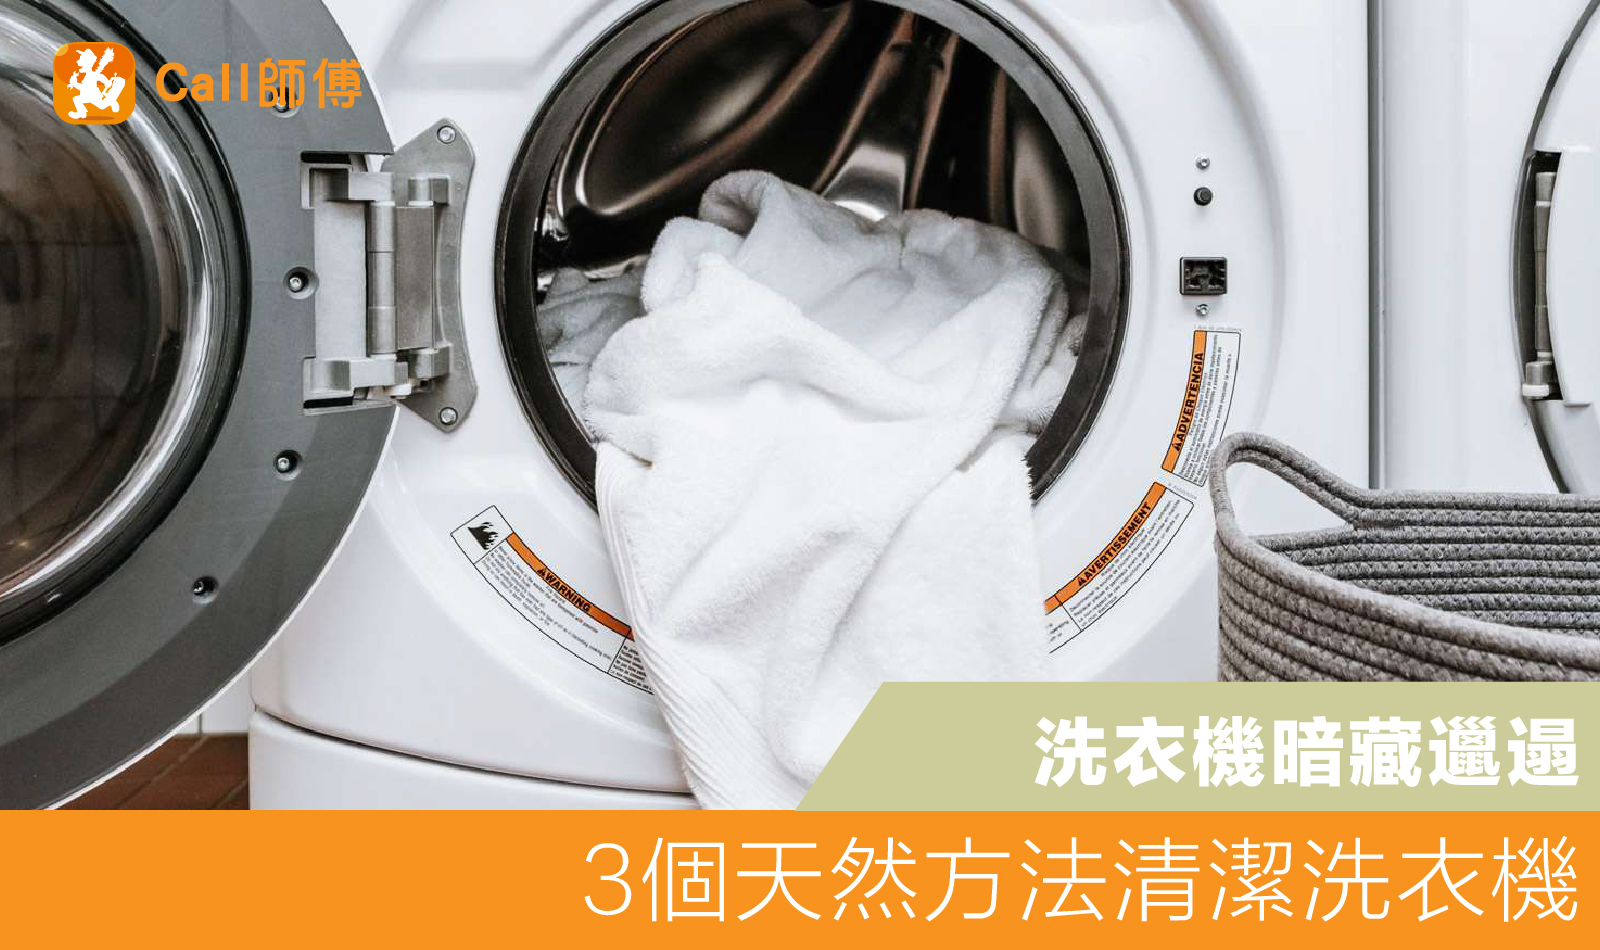 洗衣機暗藏邋遢 | DIY清潔洗衣機